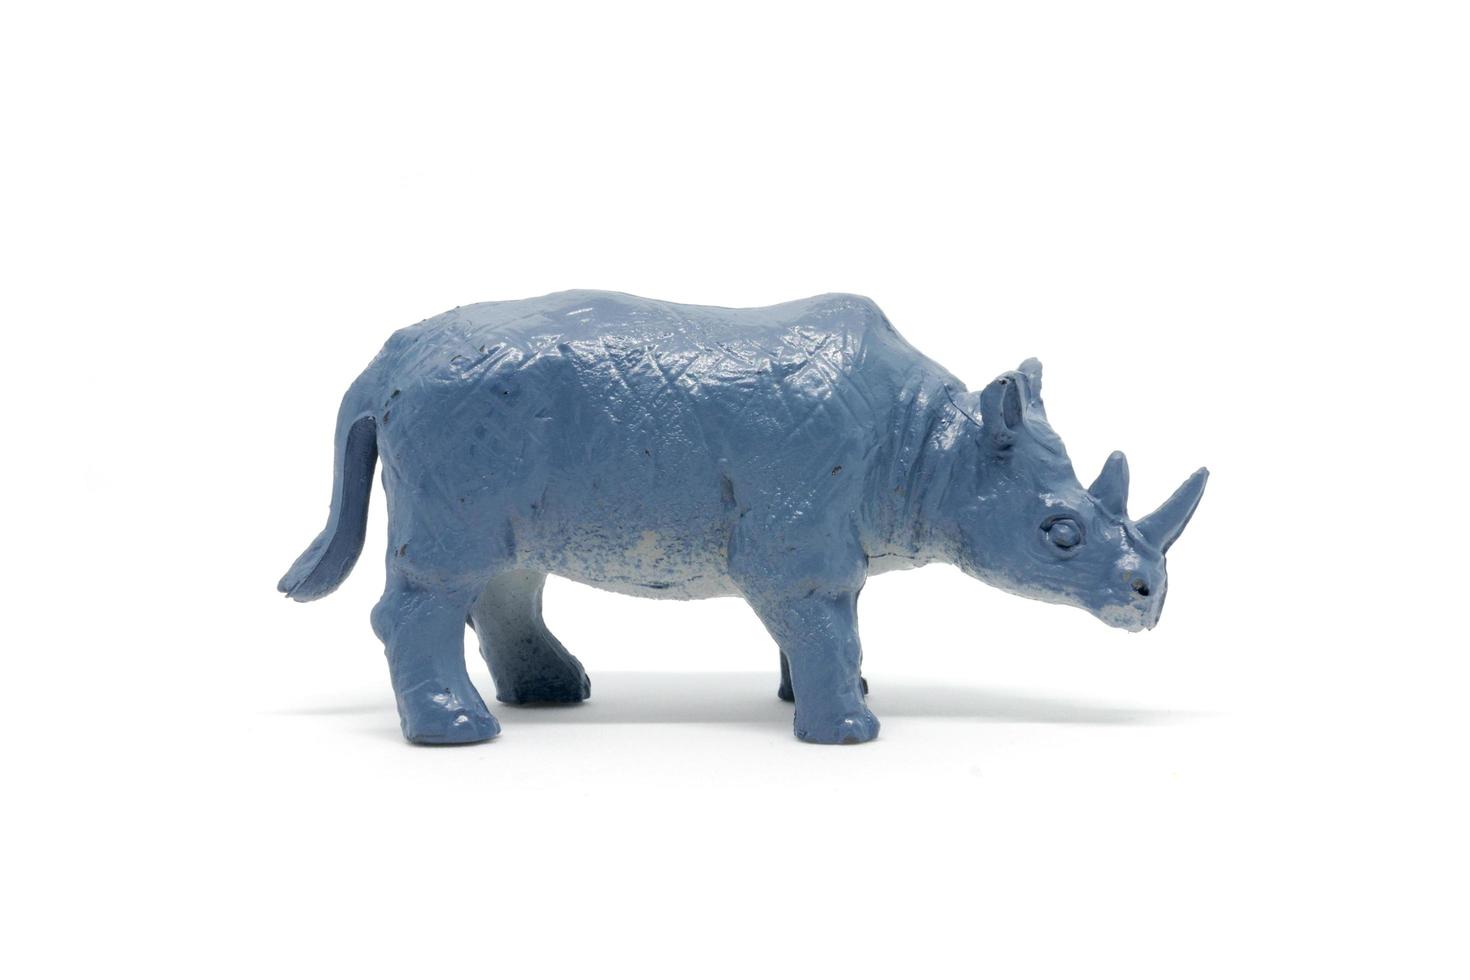 Rhinoceros model isolated on white background, animal toys plastic photo